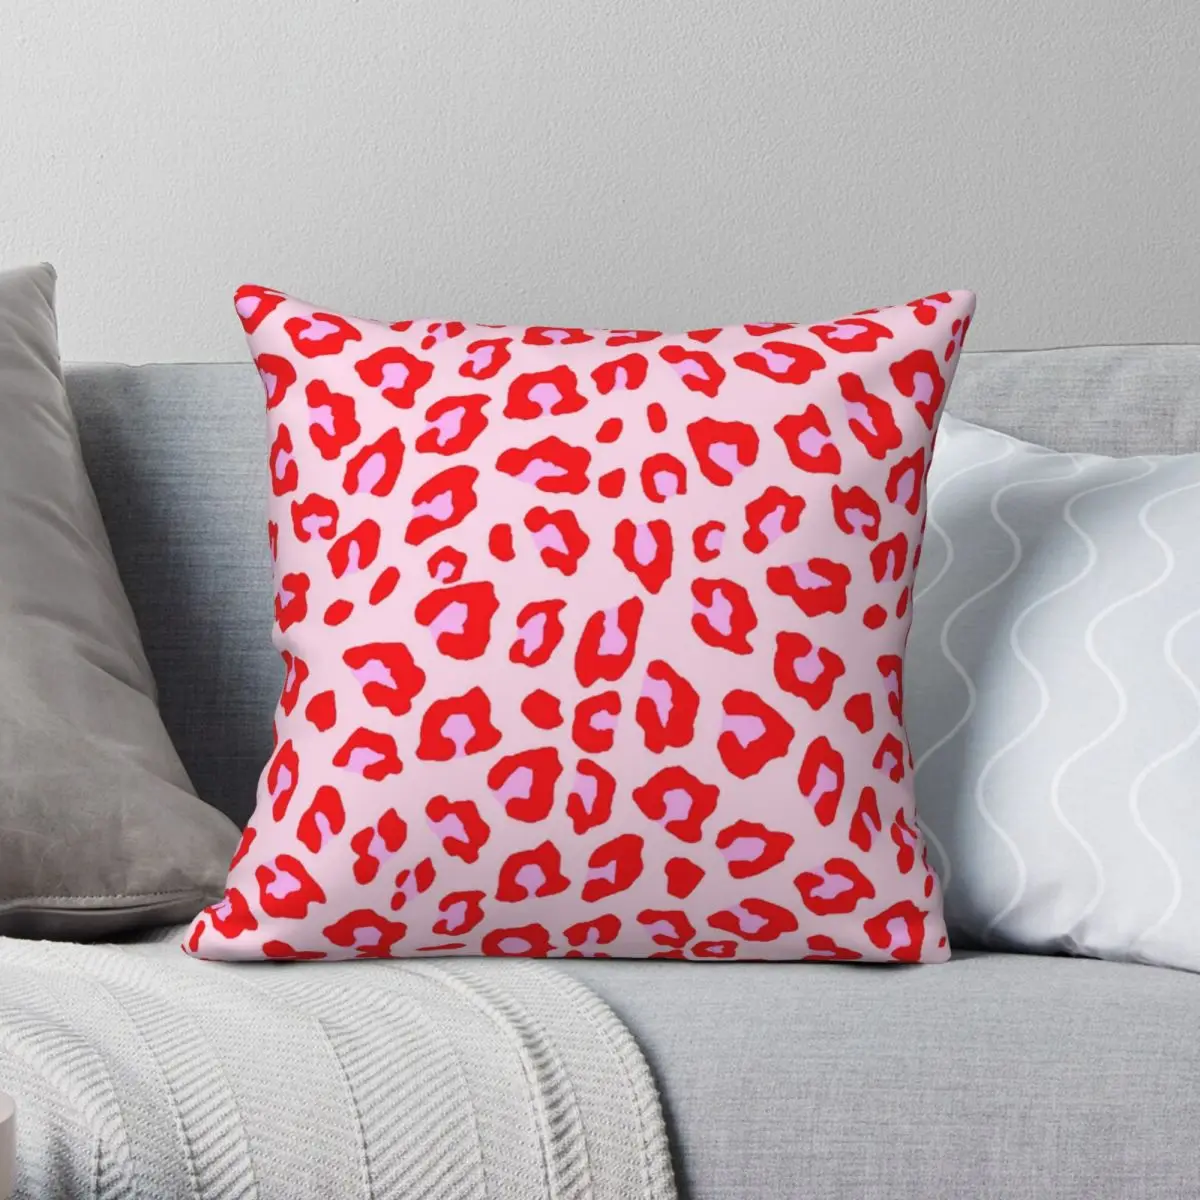 

Наволочка для подушки с леопардовым принтом, красная и розовая квадратная наволочка из полиэстера и льна, декоративная наволочка на подушку на молнии, наволочка для дивана и сидения